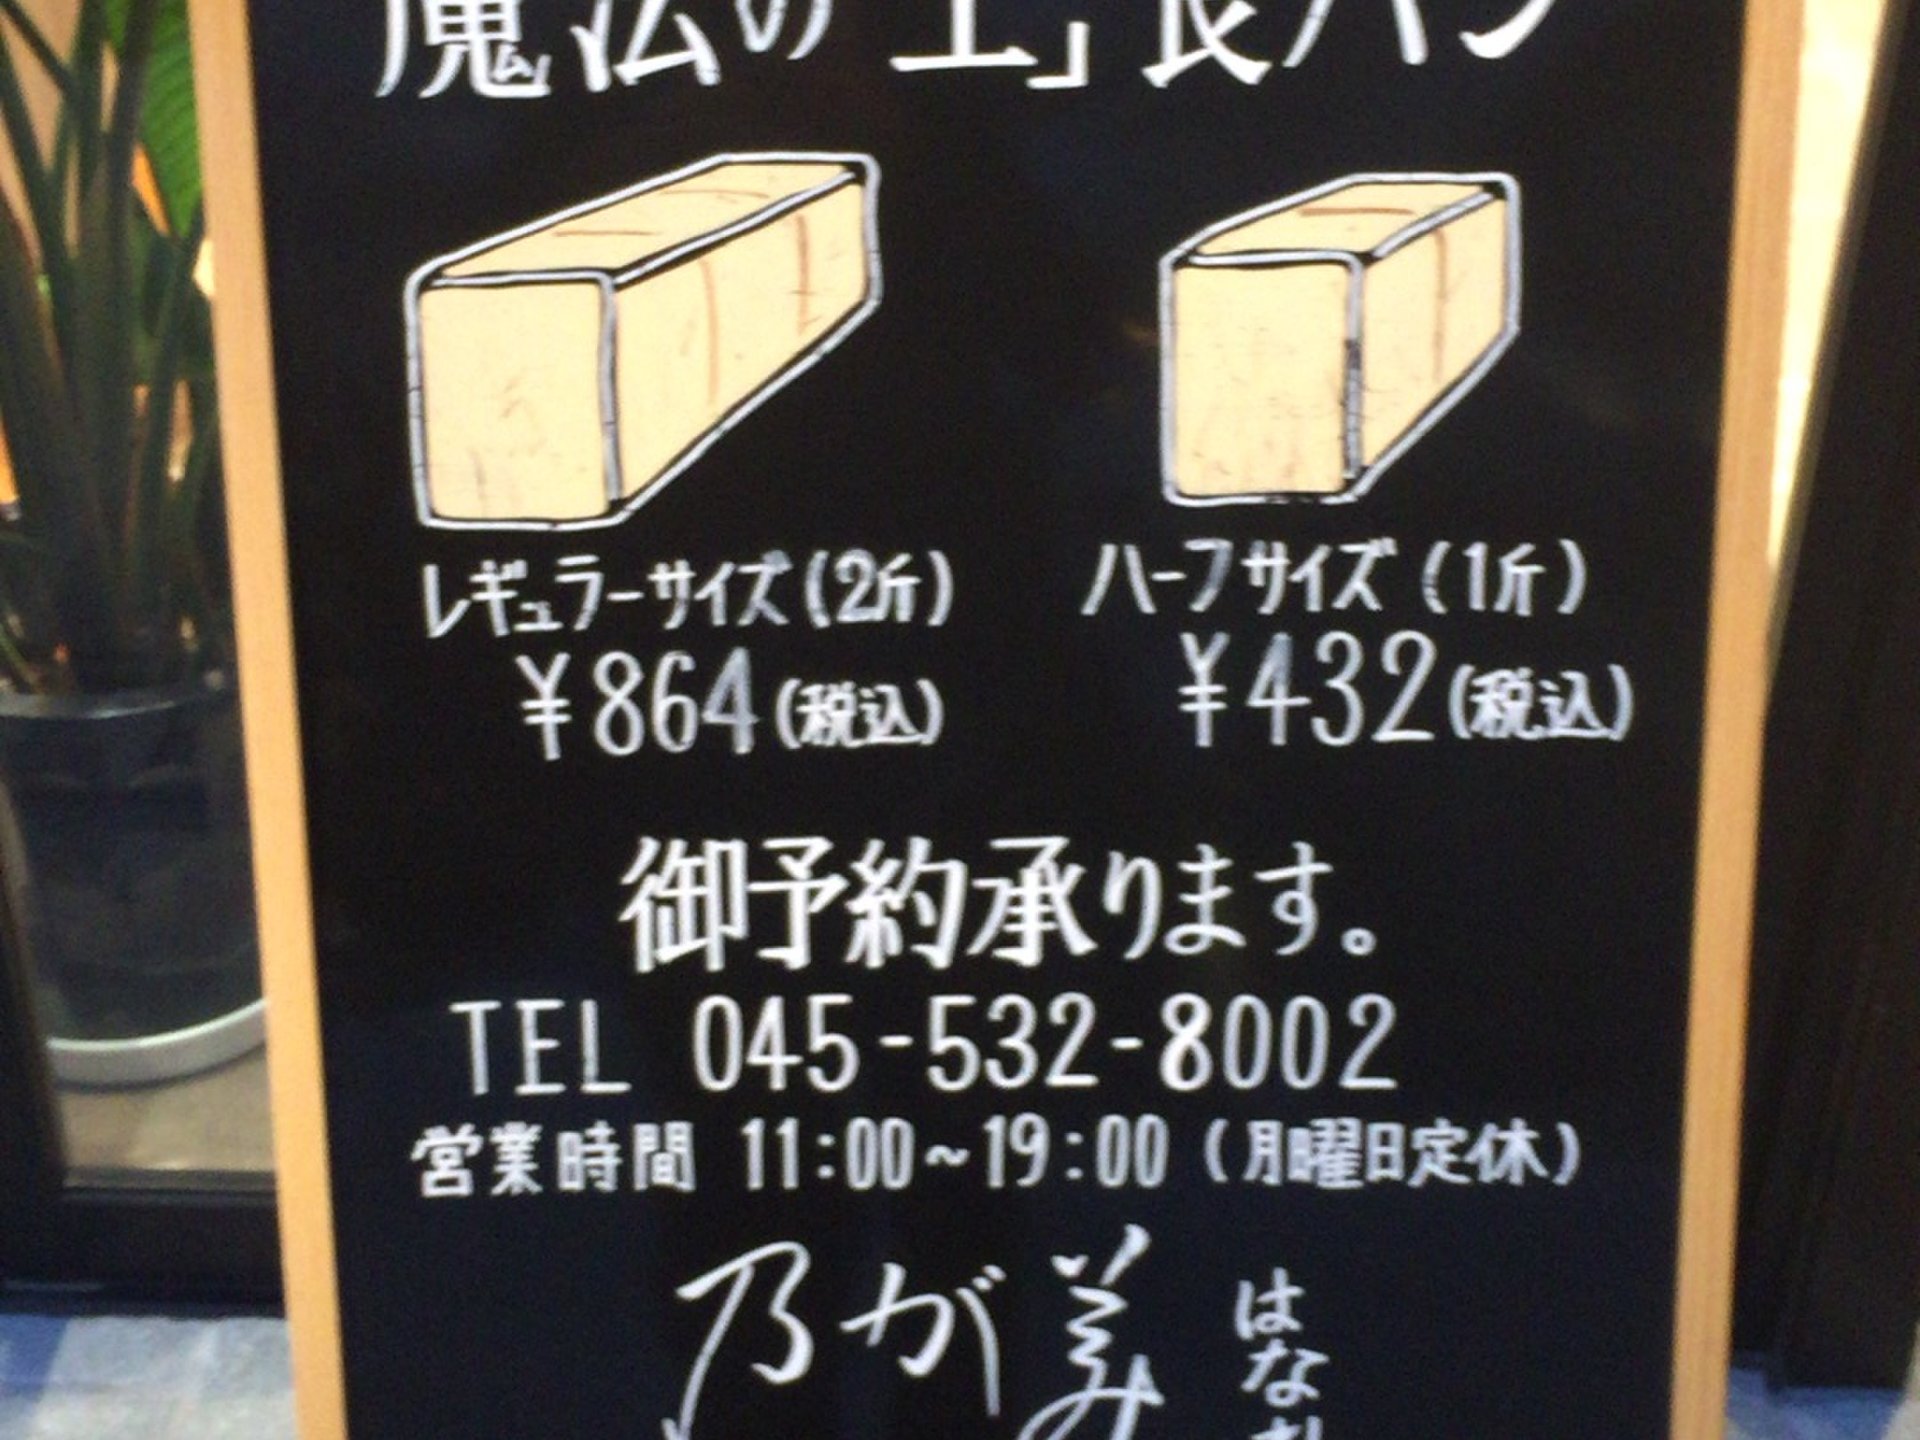 年末年始のイベントの手土産はコレで決まり！『日本の食パン10選』にも選ばれた激ウマ”魔法の生食パン”